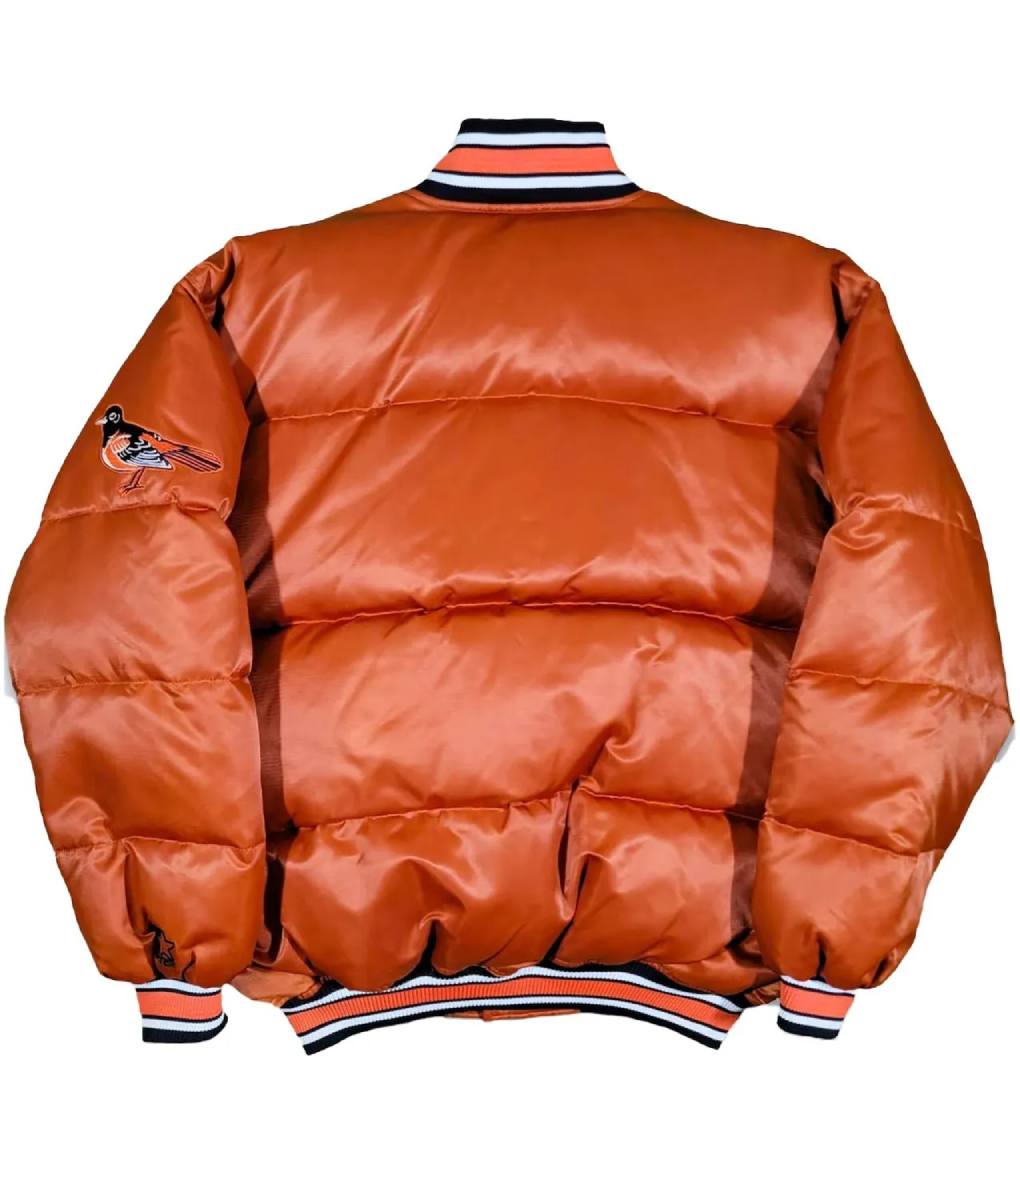 90s-baltimore-orioles-puffer-orange-satin-jacket